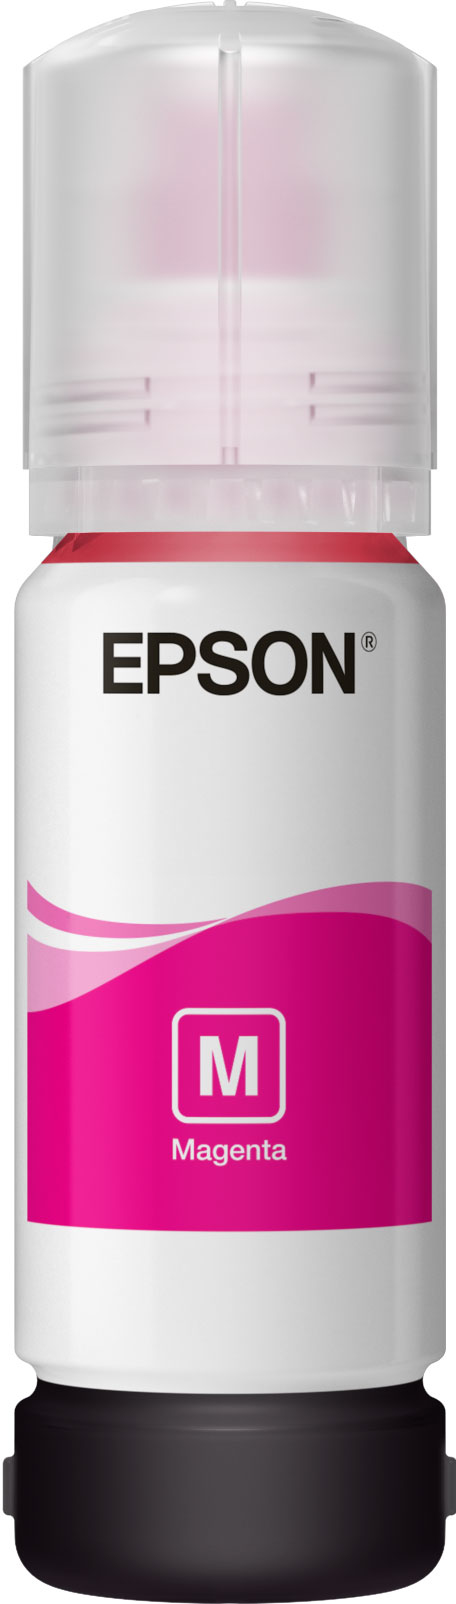 Epson 101 - 70 ml - Magenta - Original - Tintenbehälter